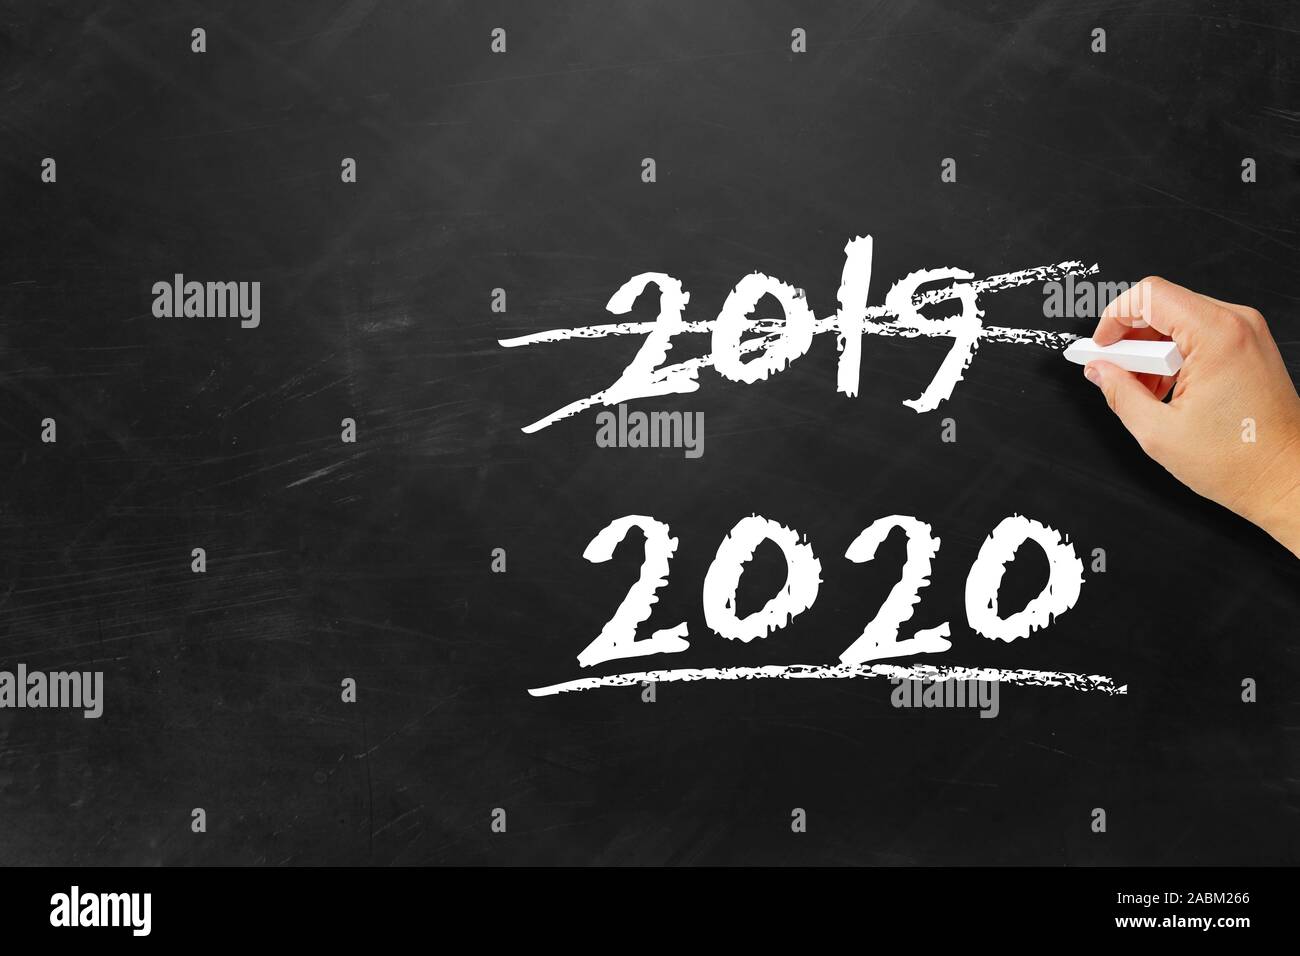 Abbrechen, um das alte Jahr 2019 und begrüßen das neue Jahr 2020 Stockfoto